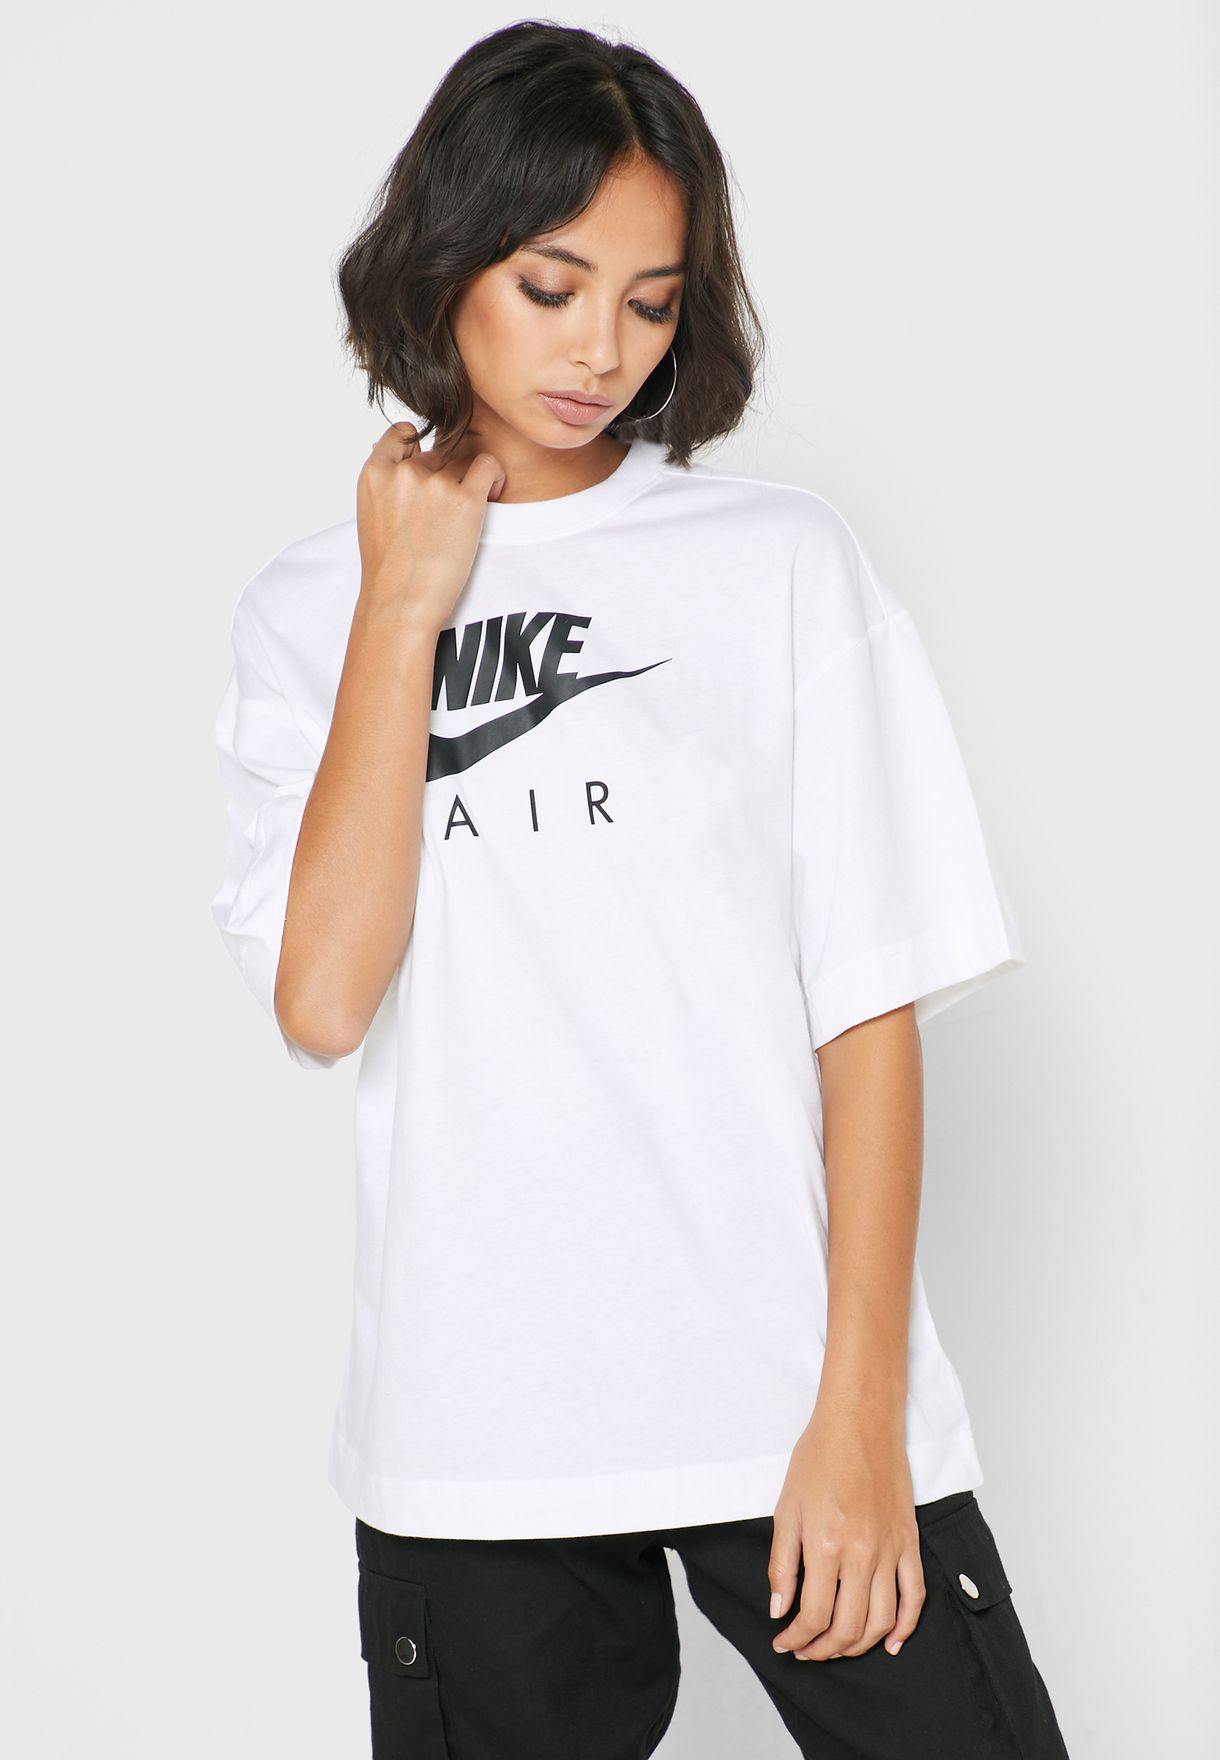 nike air t shirt women's white